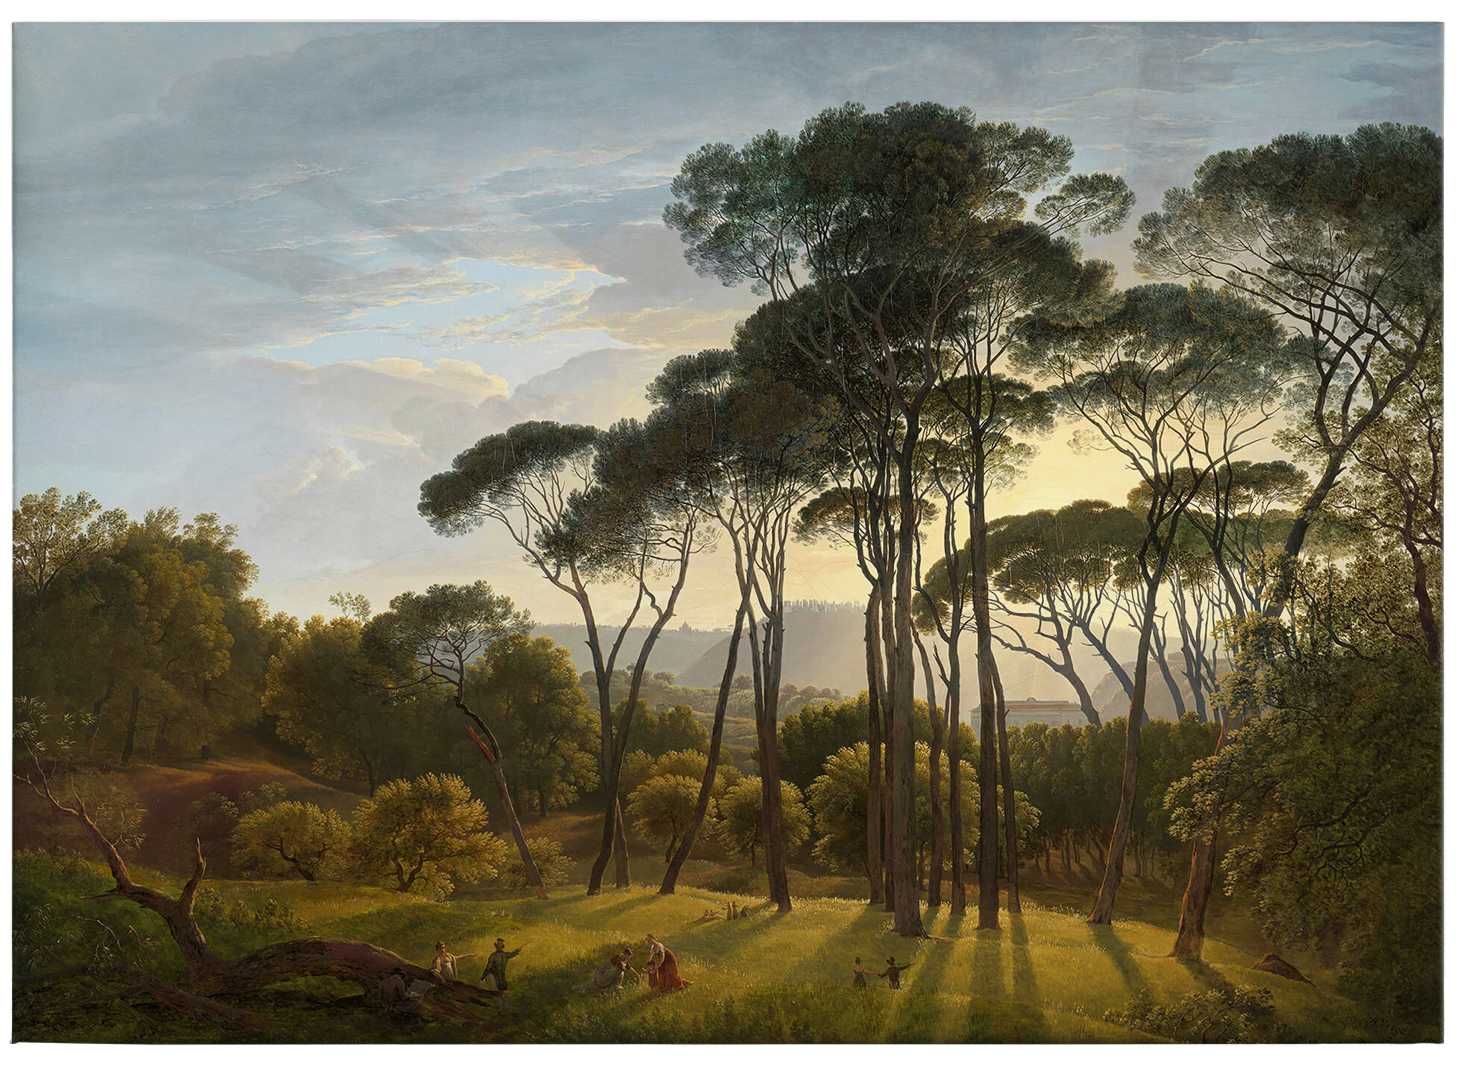             Pittura su tela Paesaggio italiano di Voogd - 0,70 m x 0,50 m
        